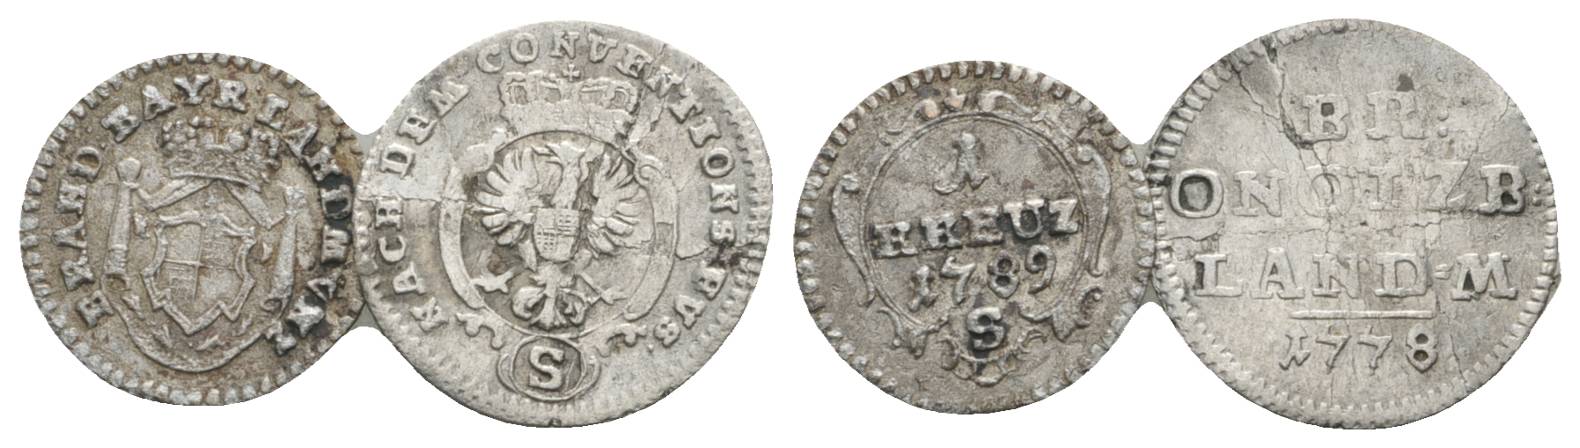  Altdeutschland, 2 Kleinmünzen (1789/1778)   